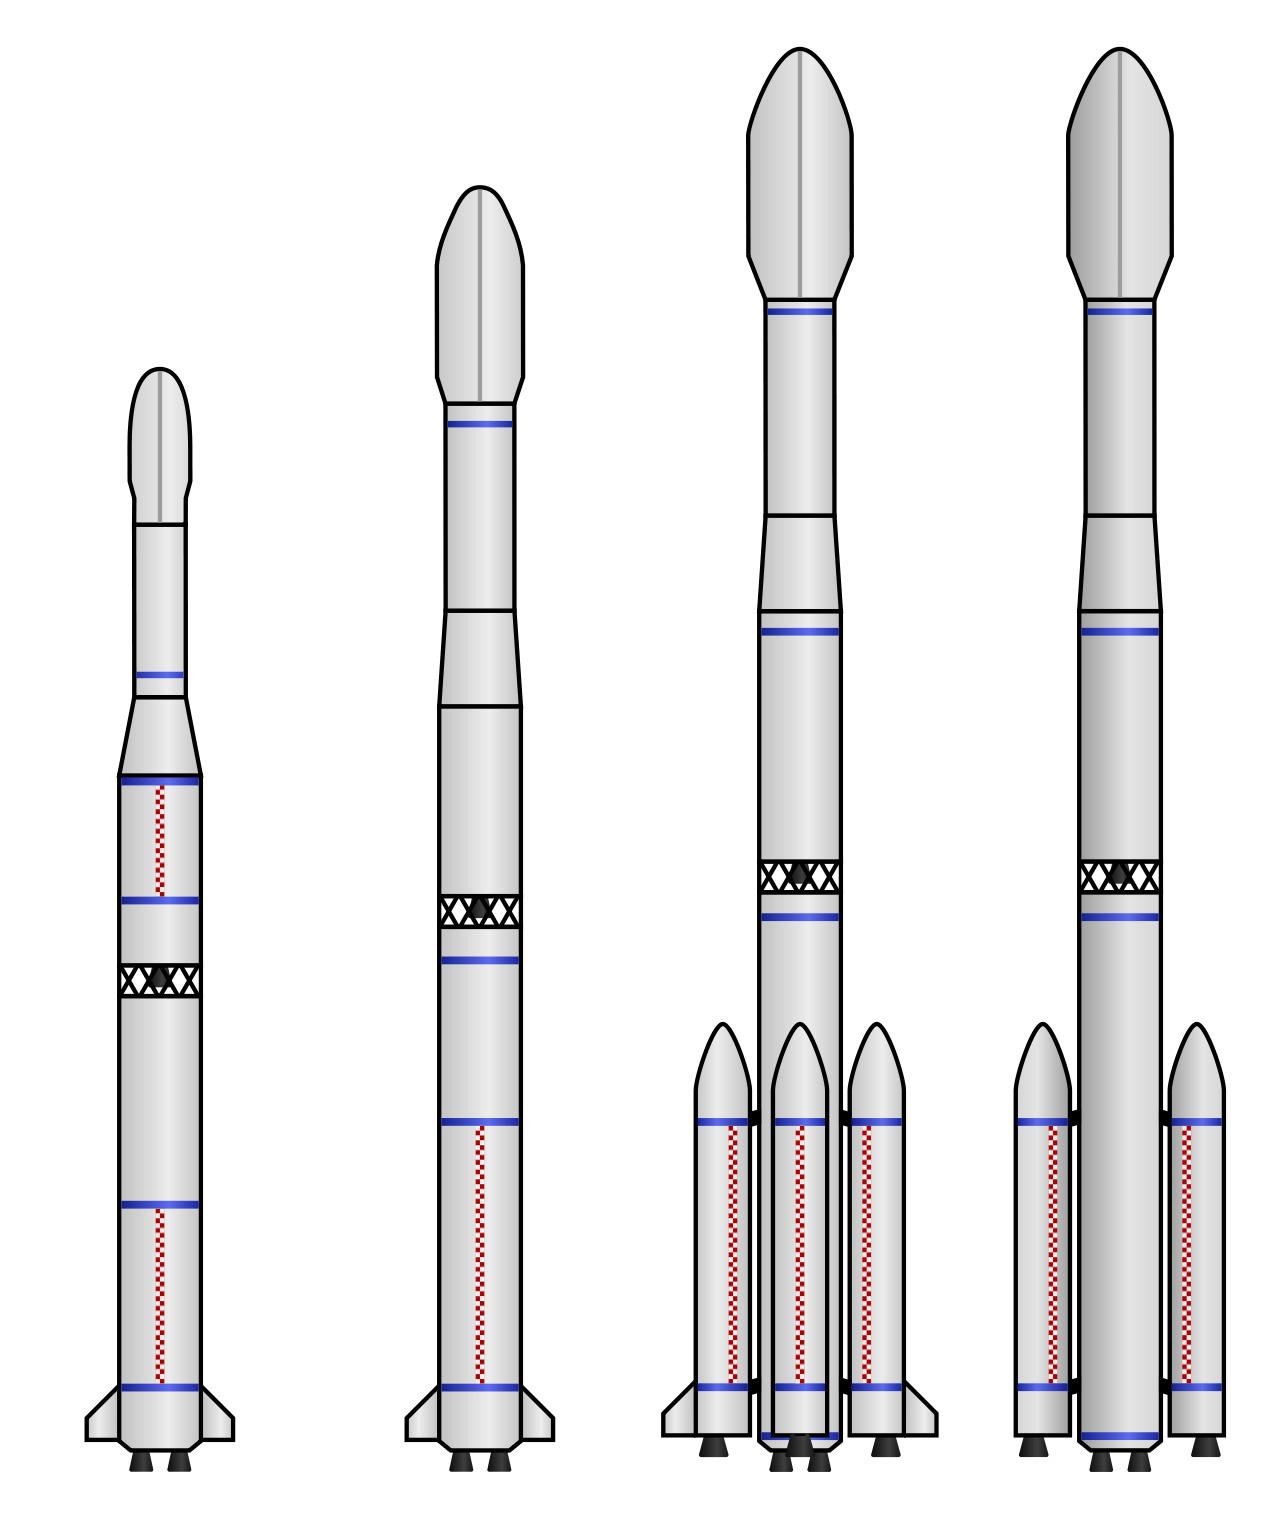 简单火箭设计图大全图片